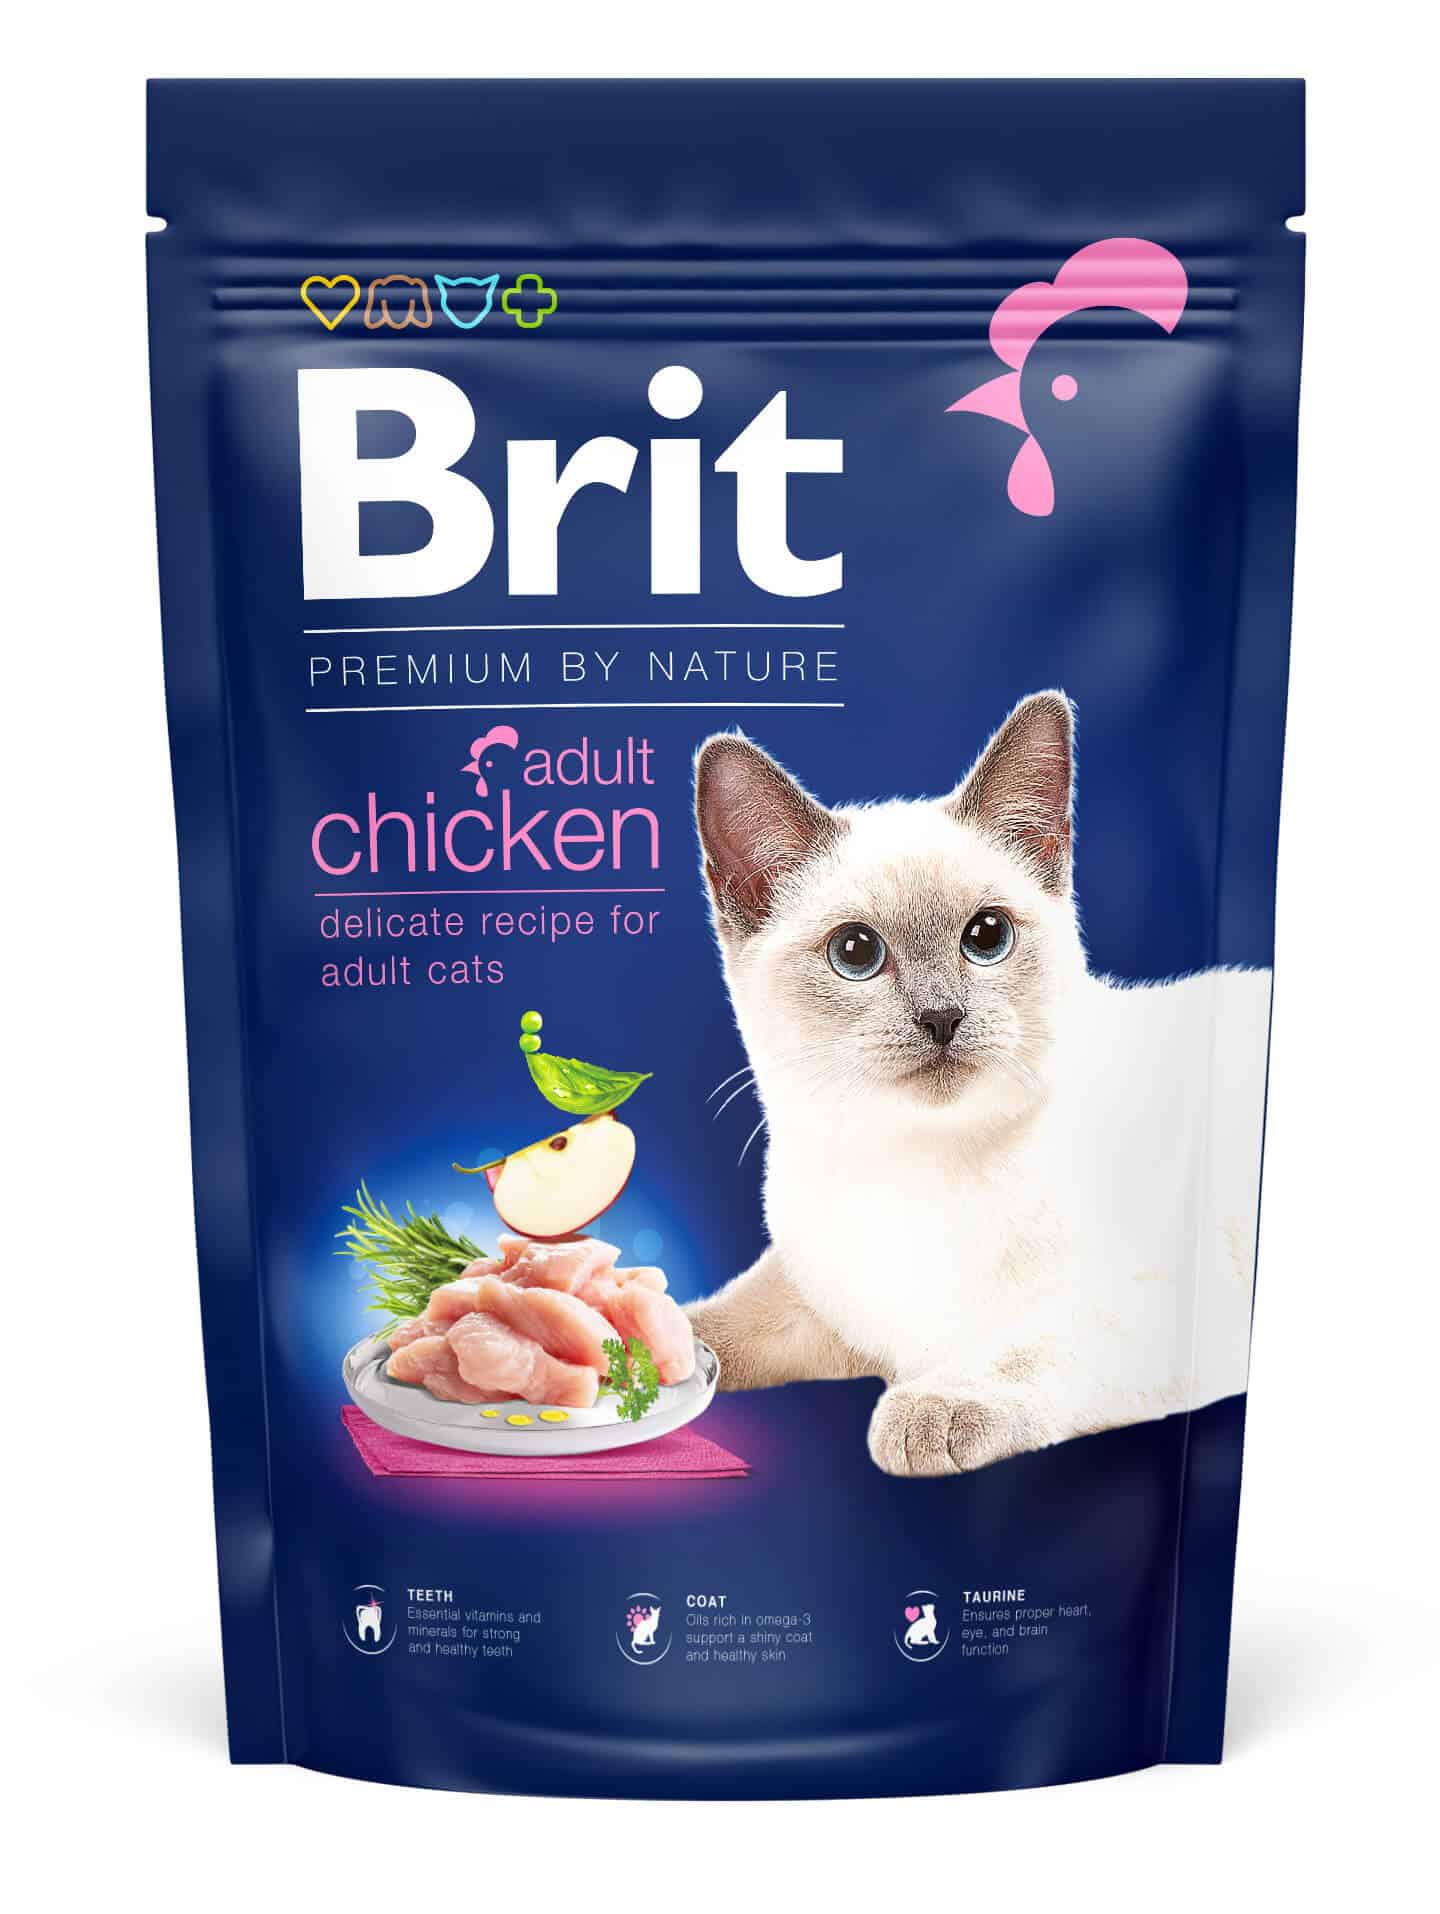 Raad eens gracht onderdak Brit Premium by Nature Kat - Adult Kip kopen? Veilig en betrouwbaar  bestellen!